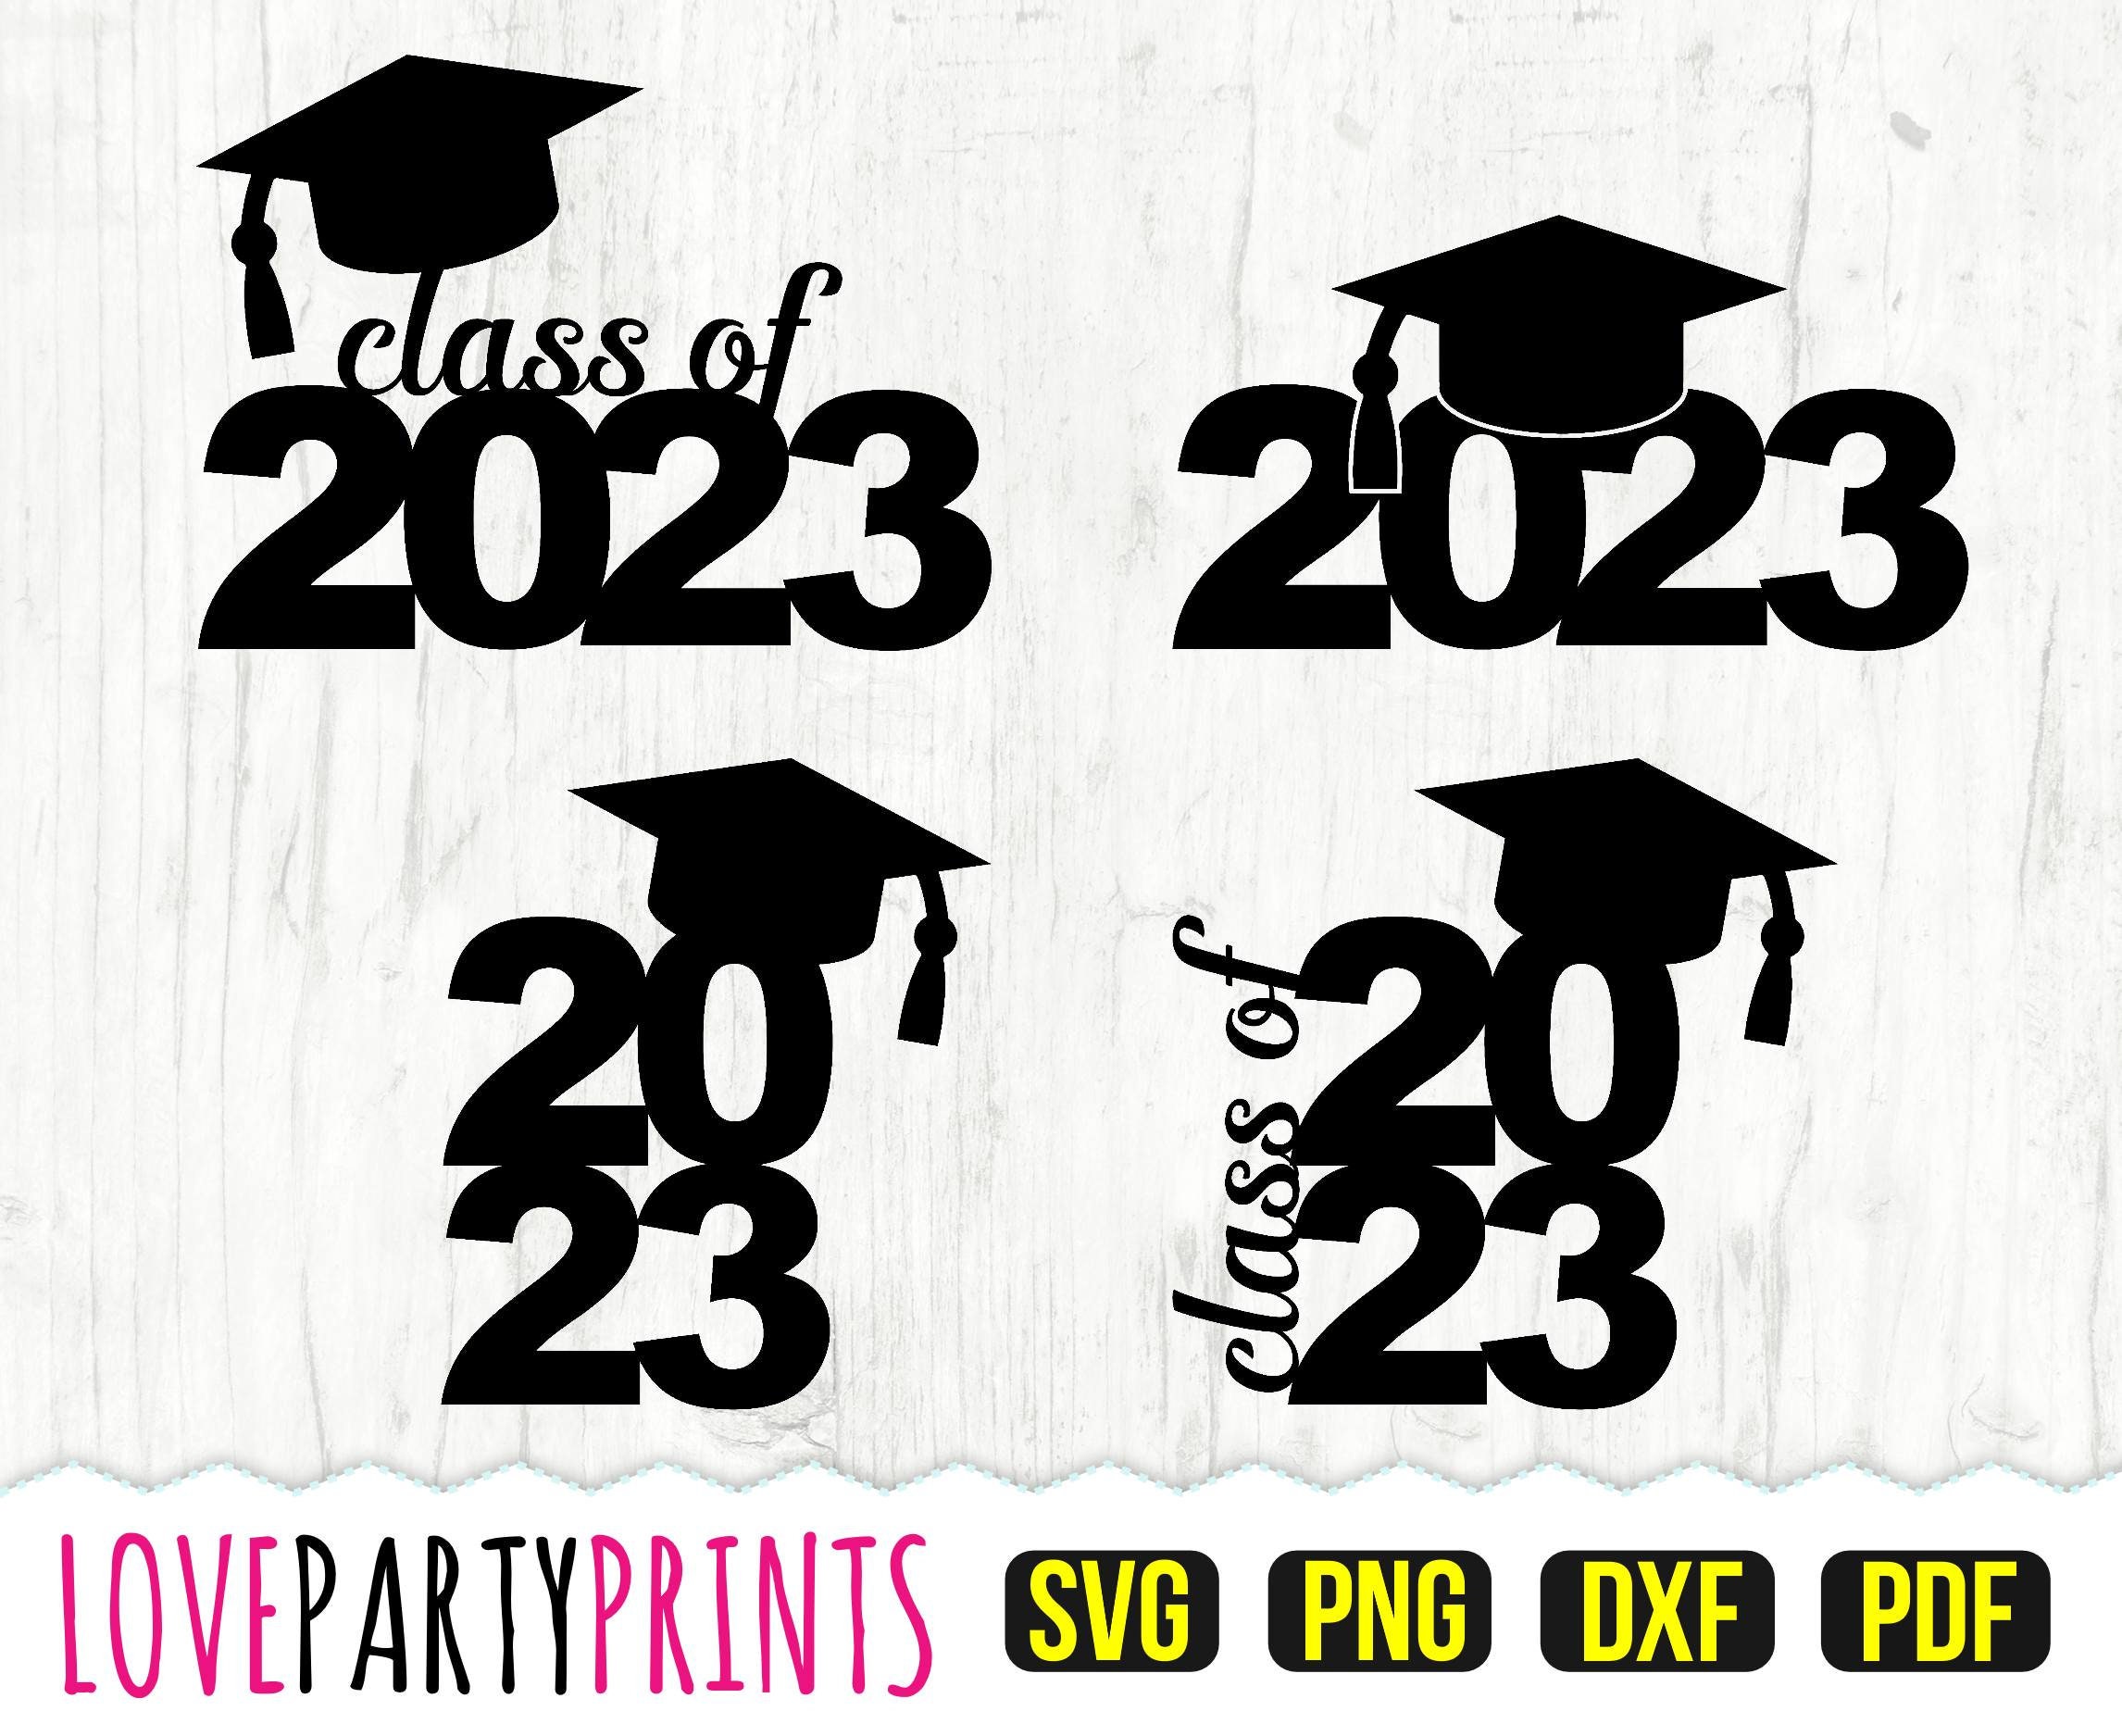 class-of-2023-svg-dxf-png-pdf-graduation-2023-svg-etsy-uk